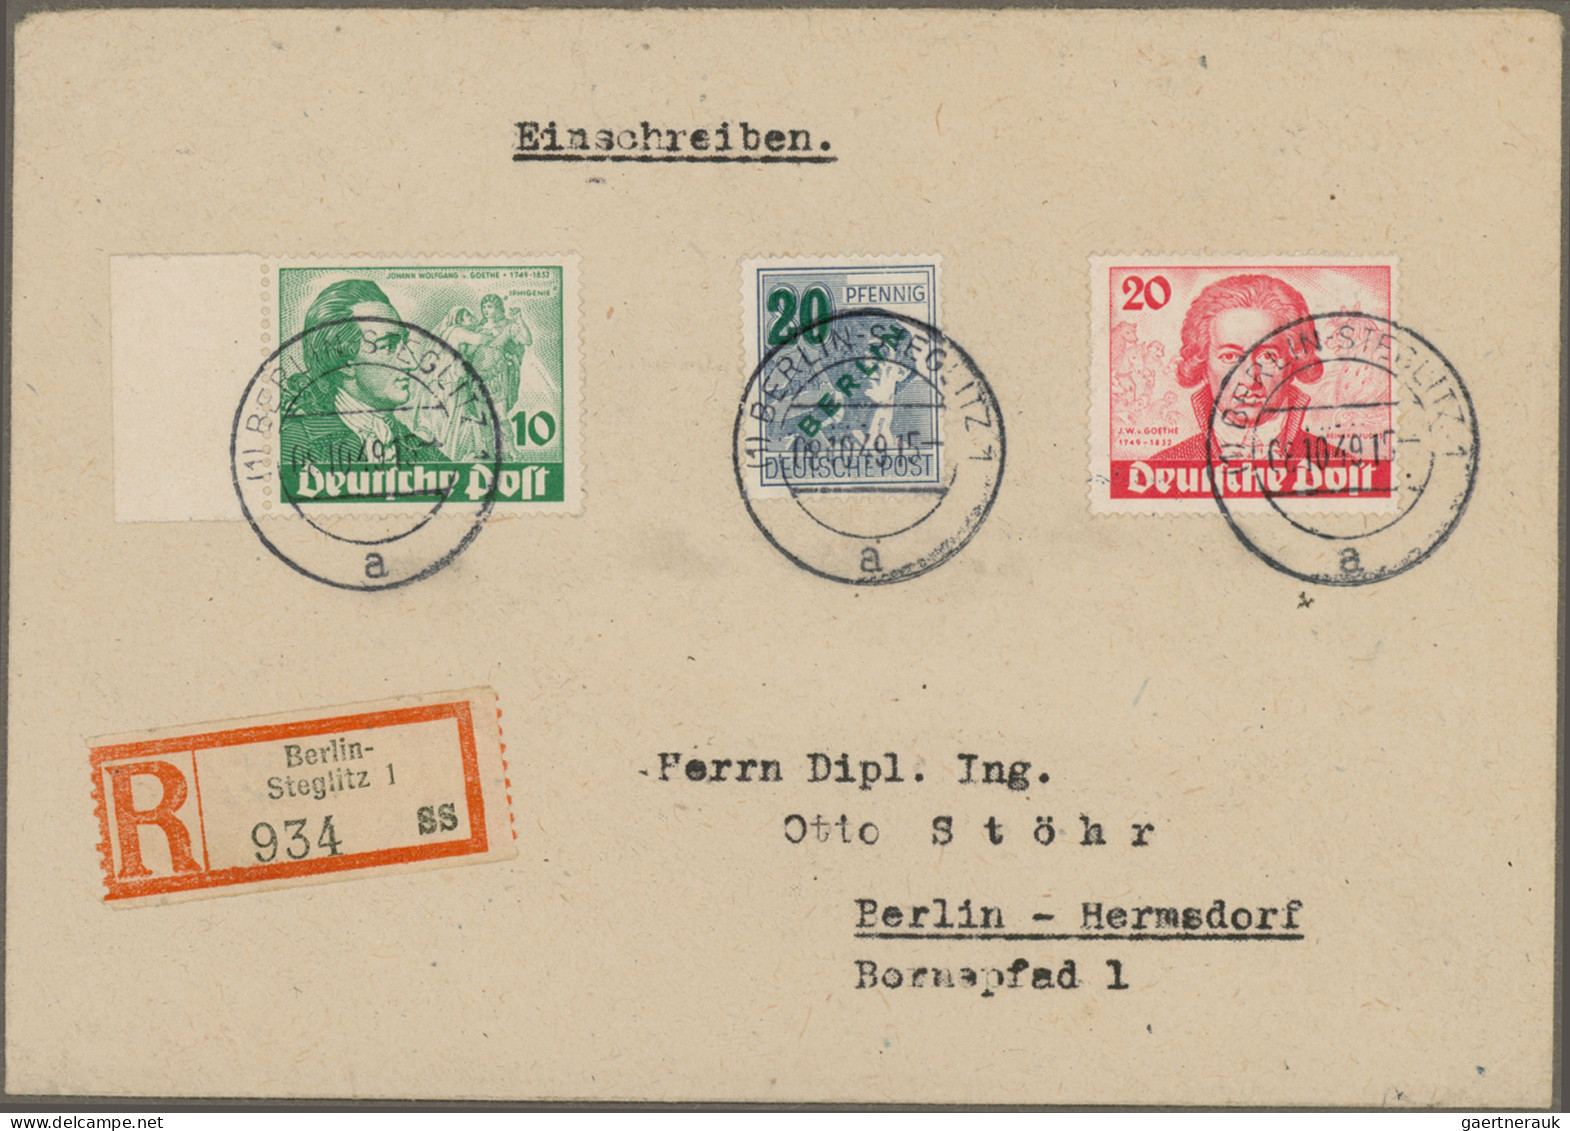 Deutschland nach 1945: 1945/1971 (ca.), schöne und attraktive Belegesammlung von